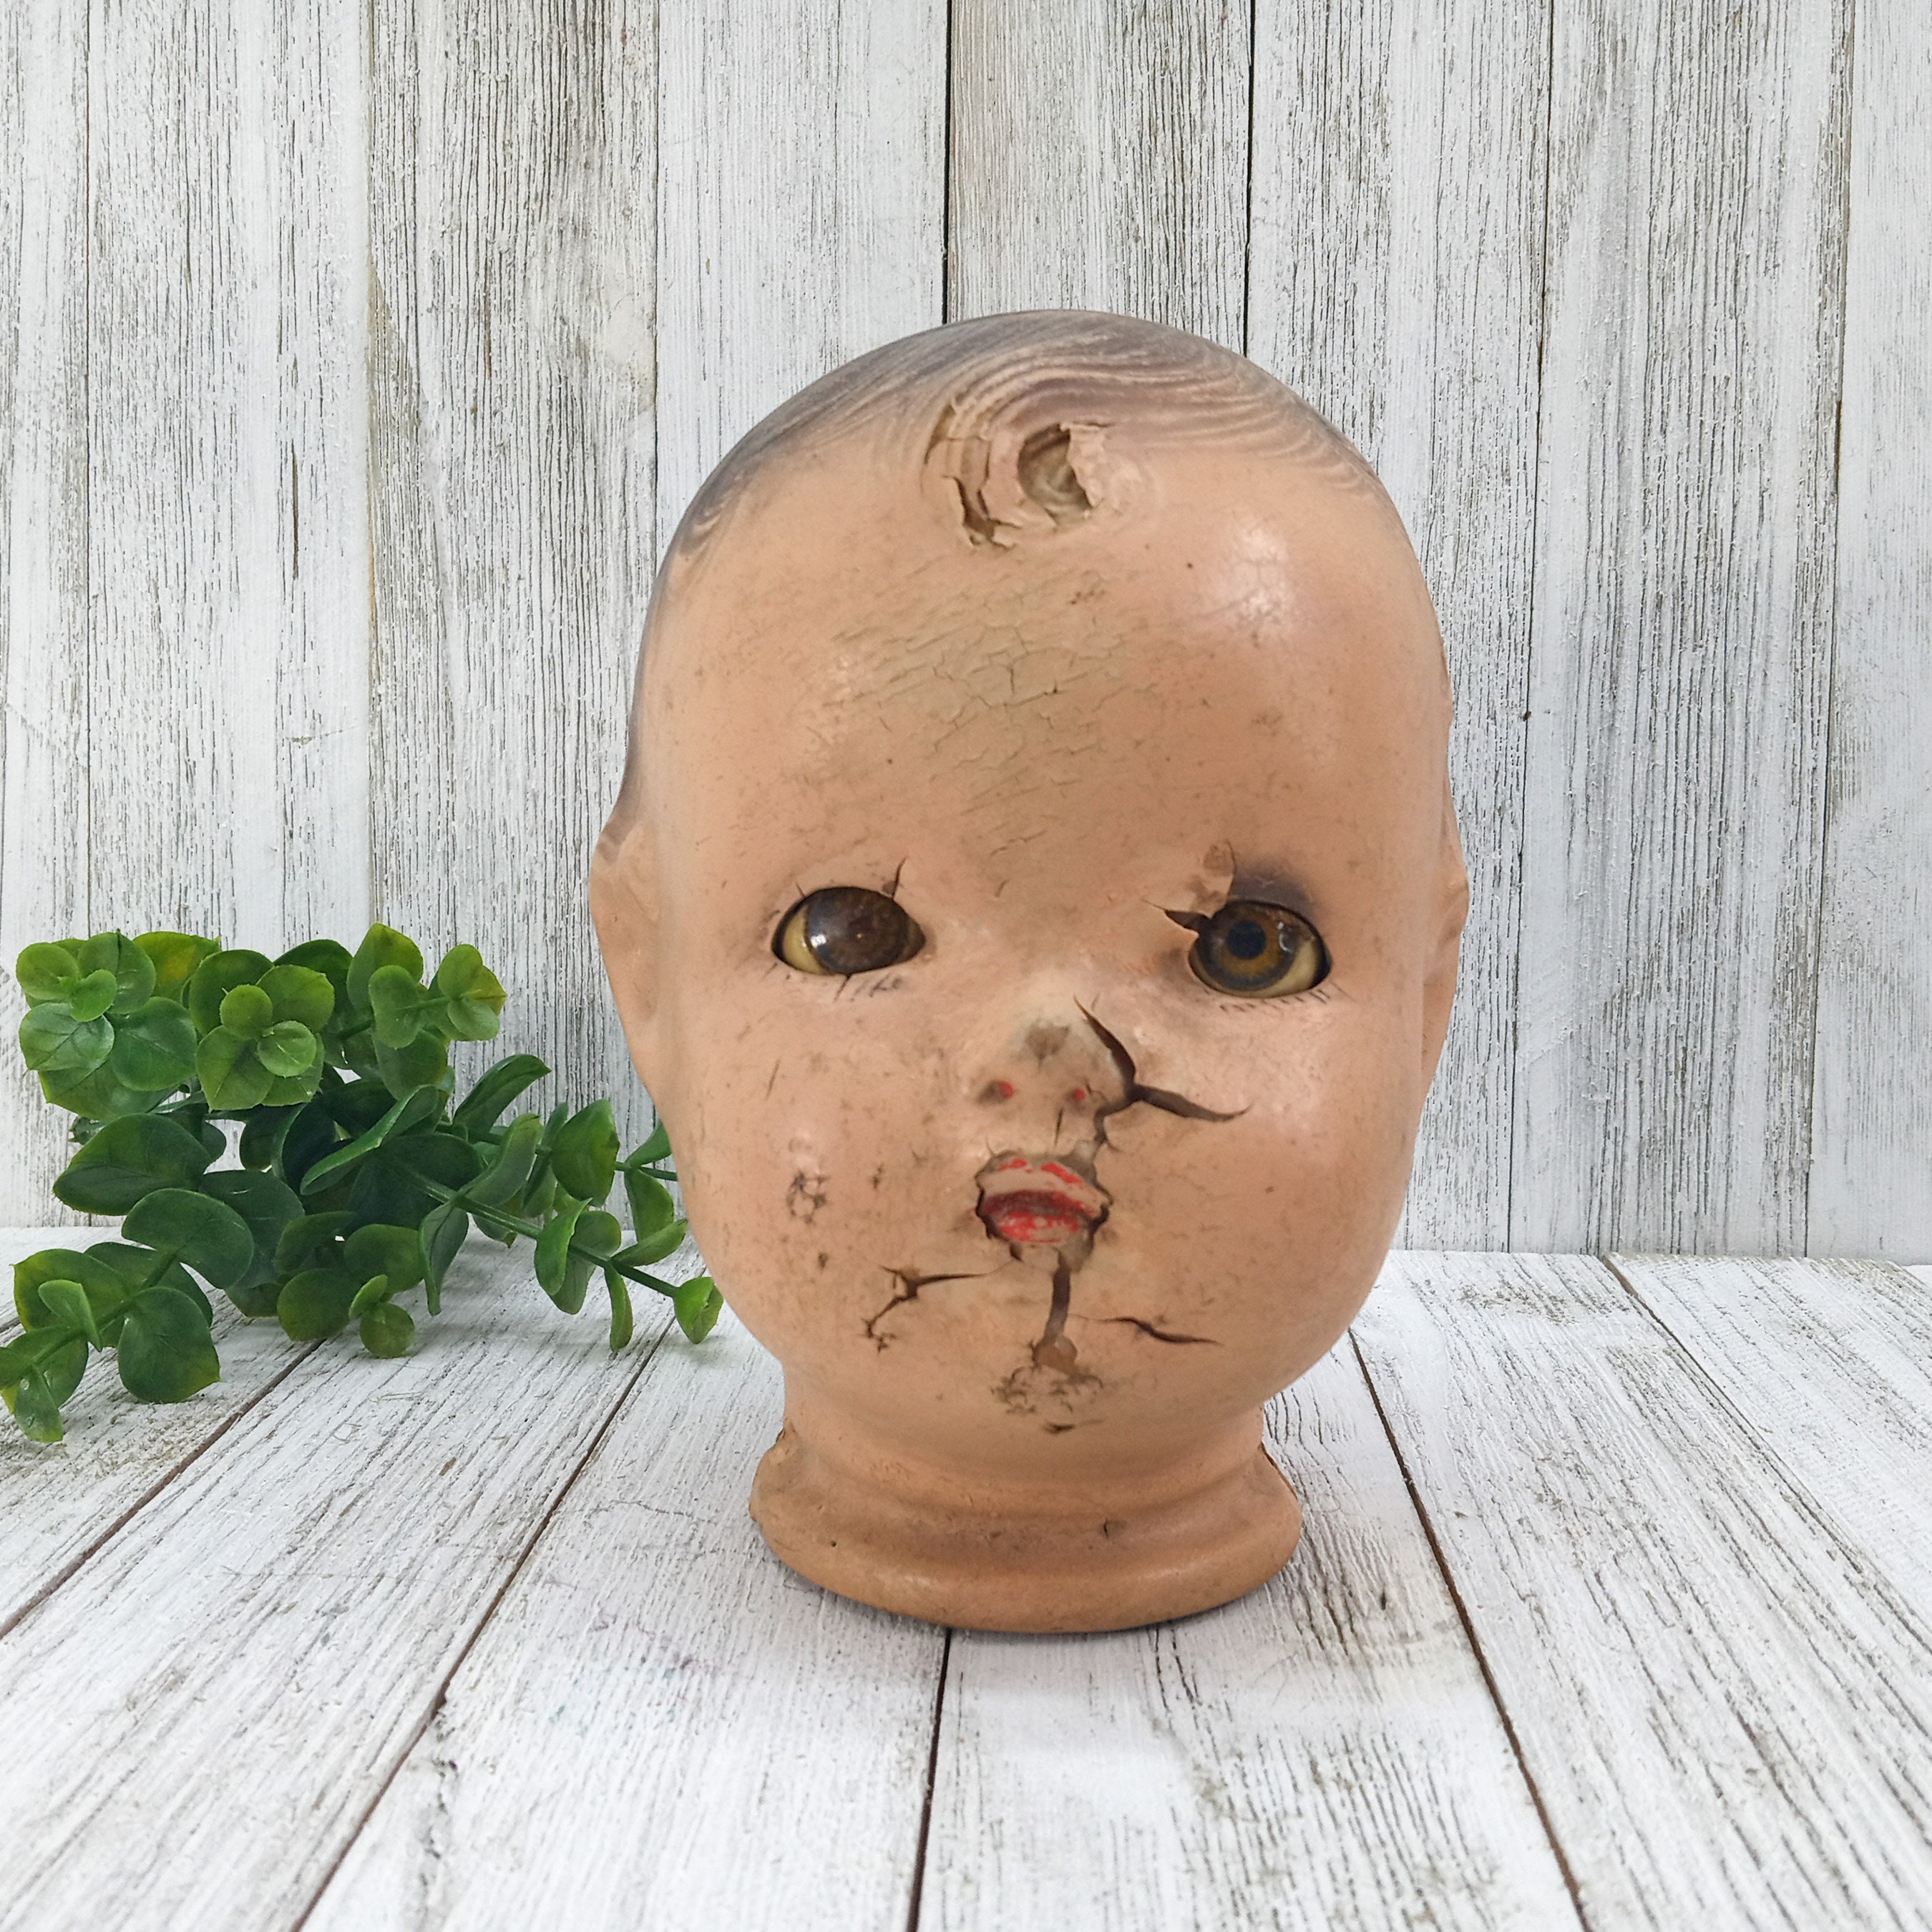 Vintage Creepy Doll Head, Composition Doll Head Decor 